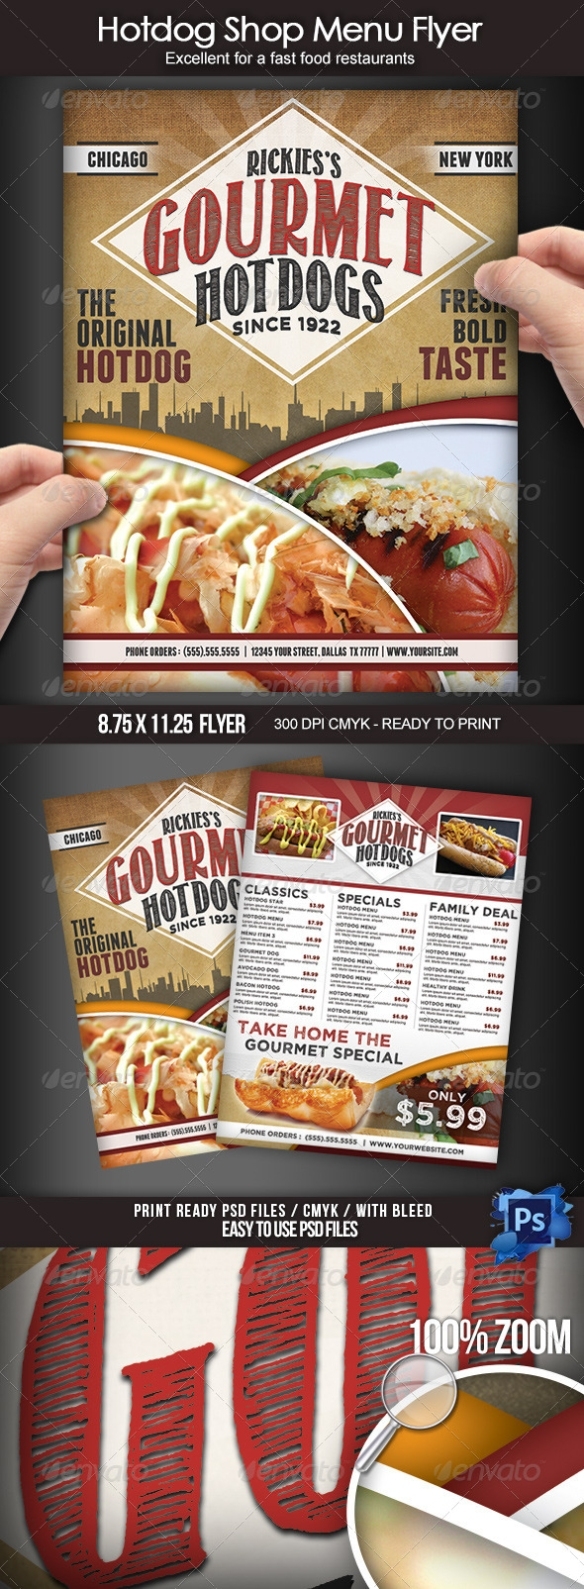 Hotdog Shop Menu Flyer By Boca2600 | Graphicriver Intended For Hot Dog Flyer Template